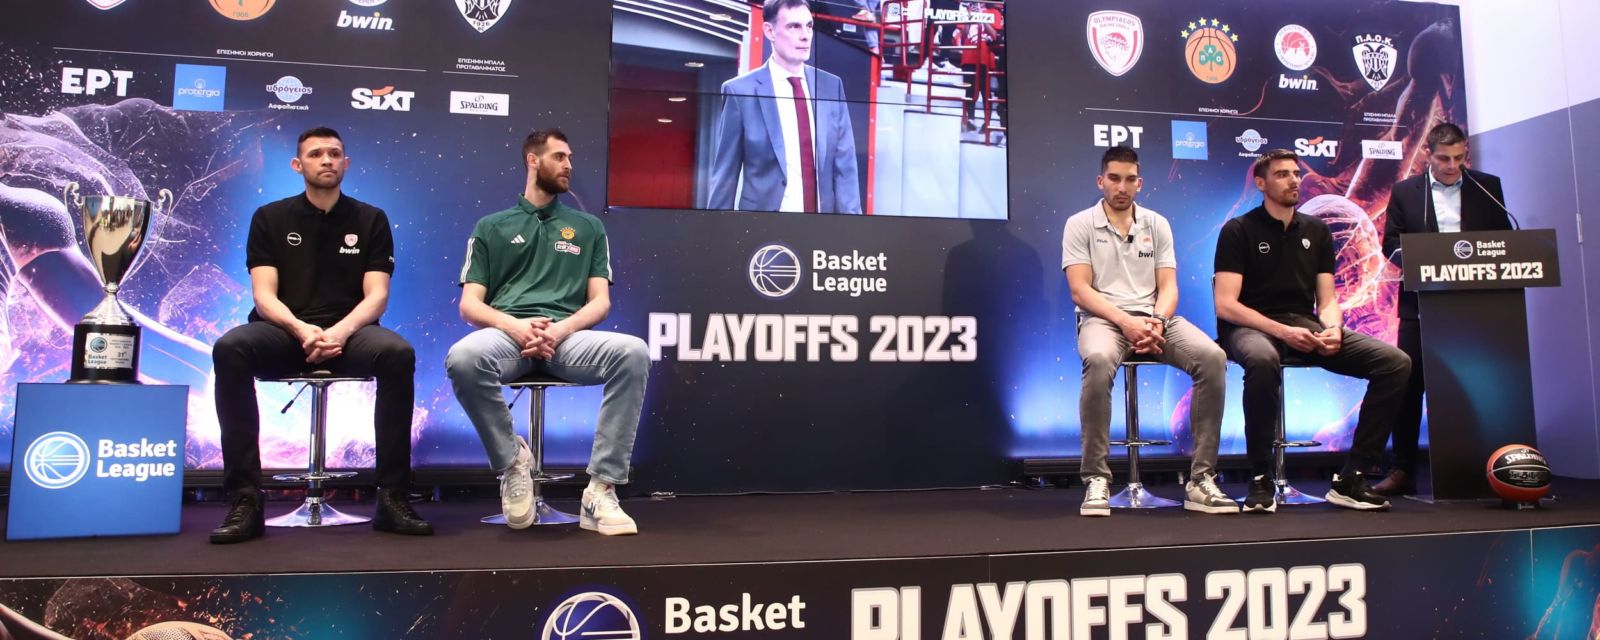 Συνέντευξη τύπου Basket League: Οι δηλώσεις των παικτών